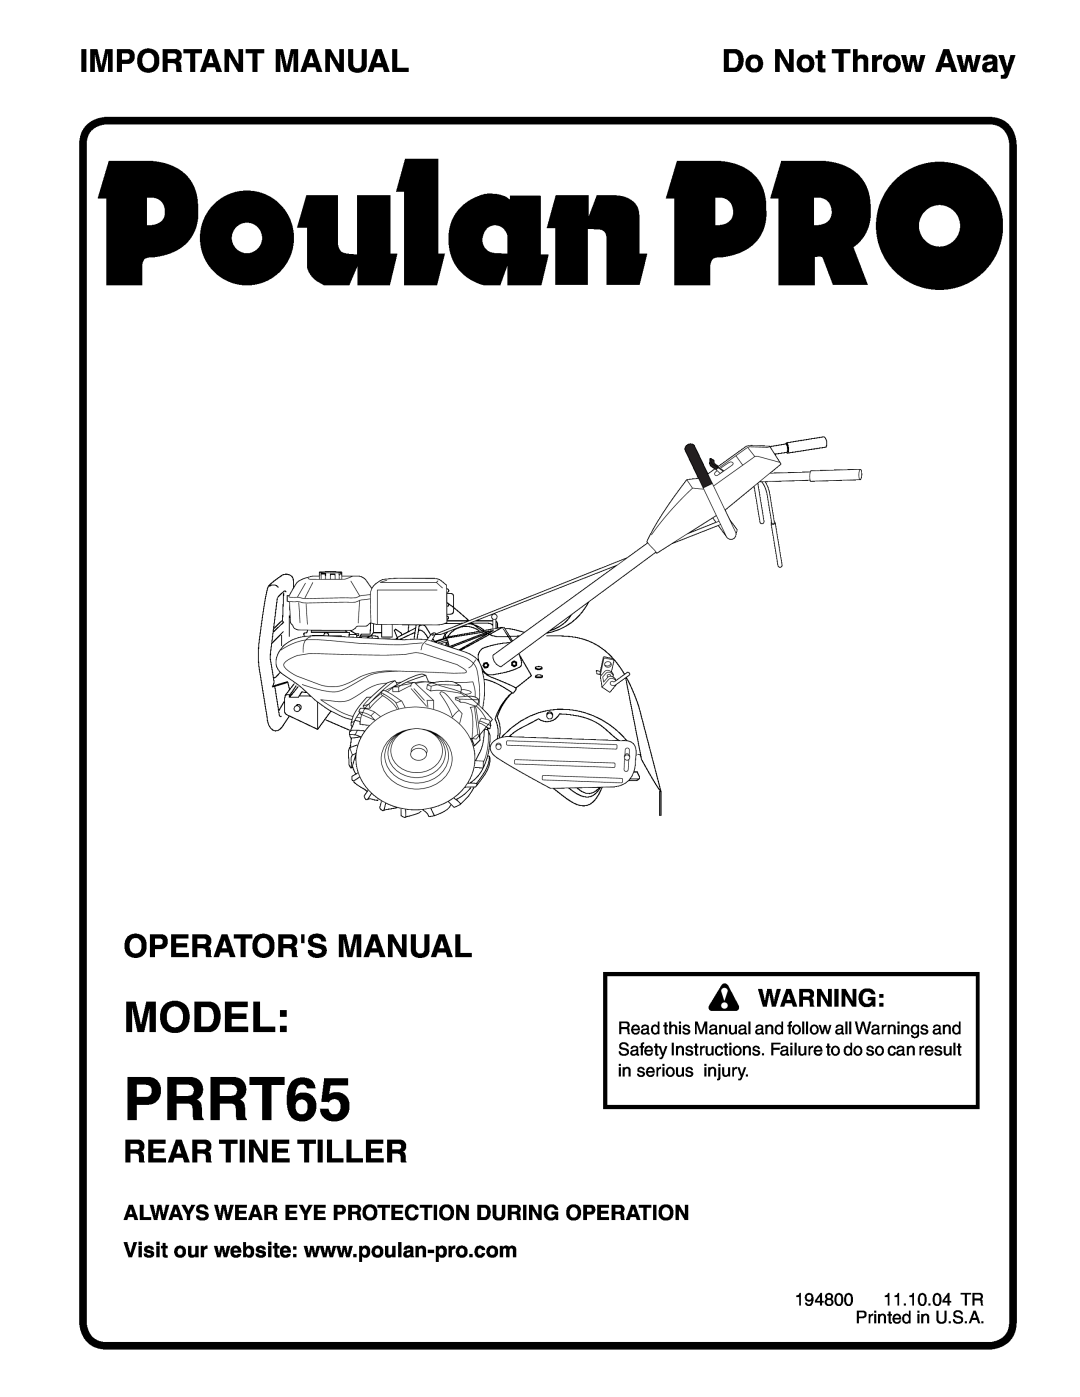 Poulan PRRT65 manual Model, Important Manual, Operators Manual, Rear Tine Tiller, Do Not Throw Away 